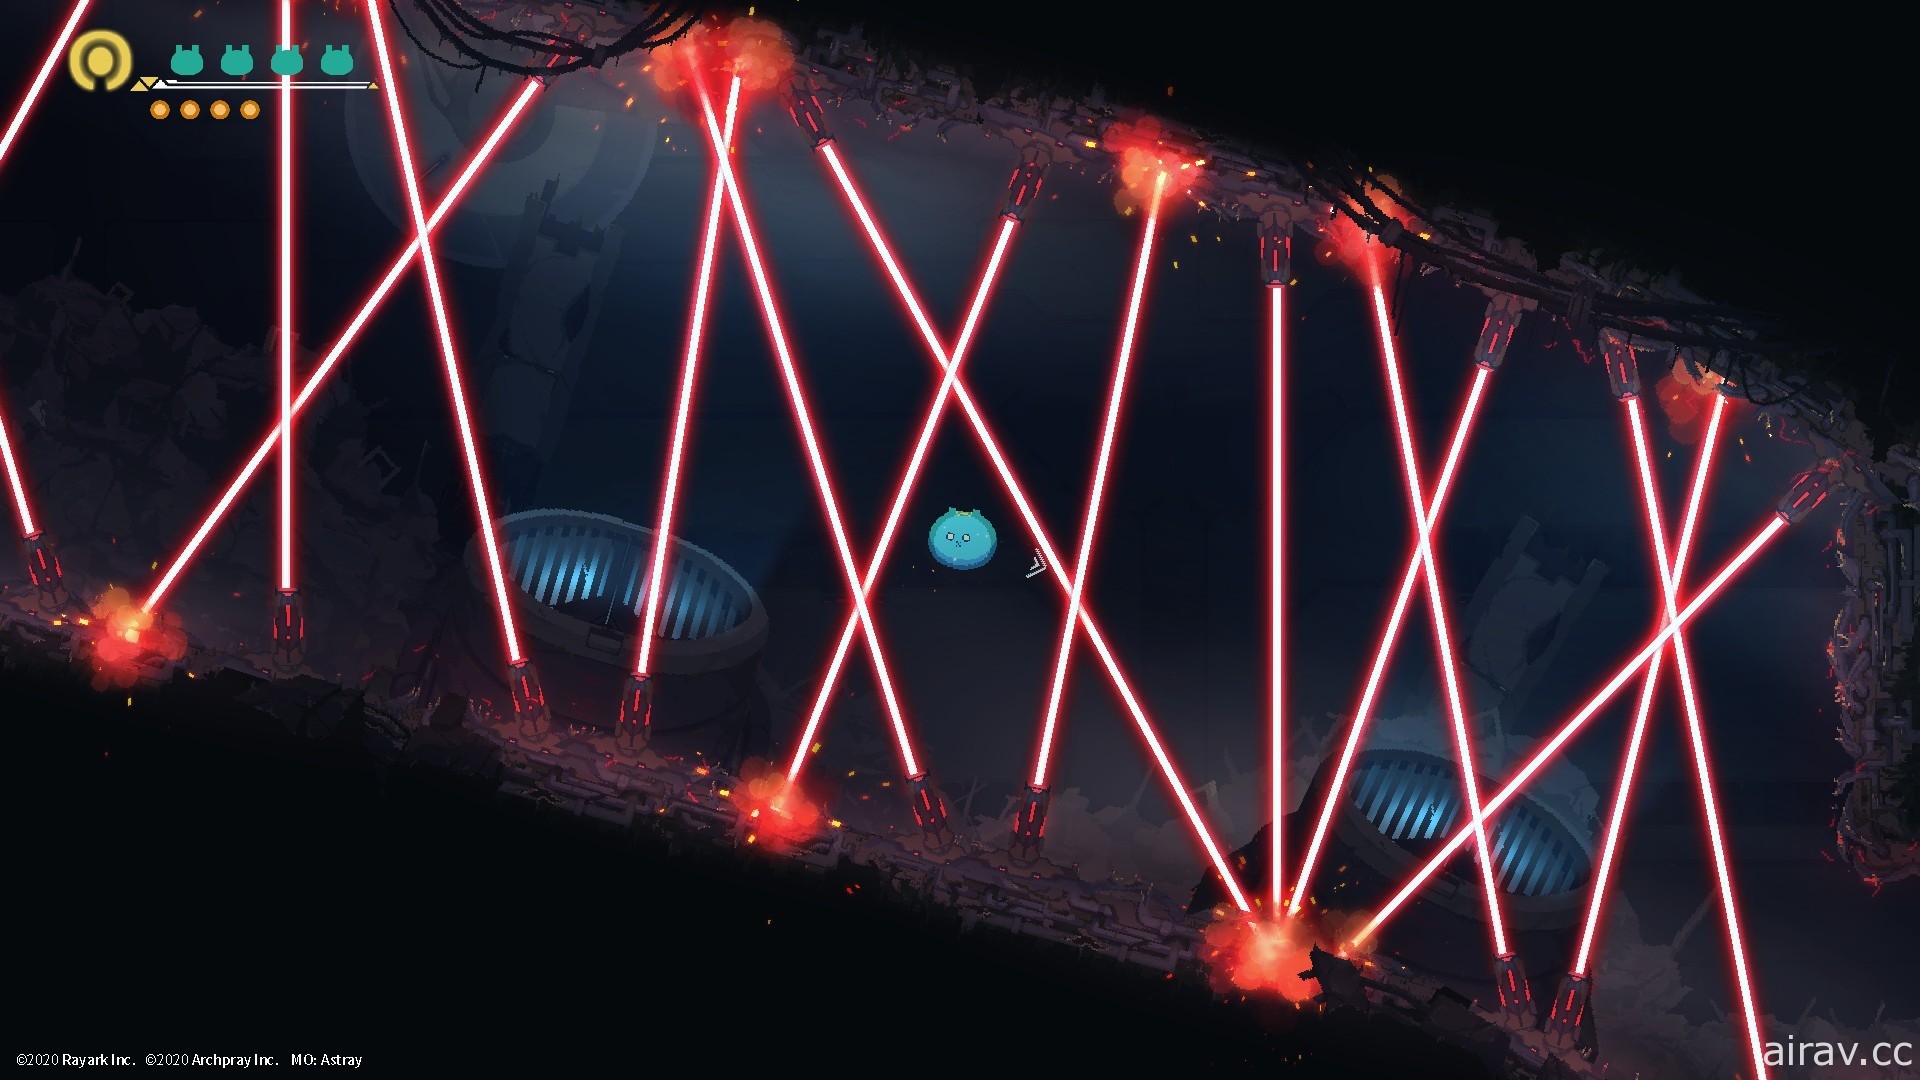 橫向動作解謎遊戲《MO : Astray 細胞迷途》將於 9 月 10 日推出 NS 主機版